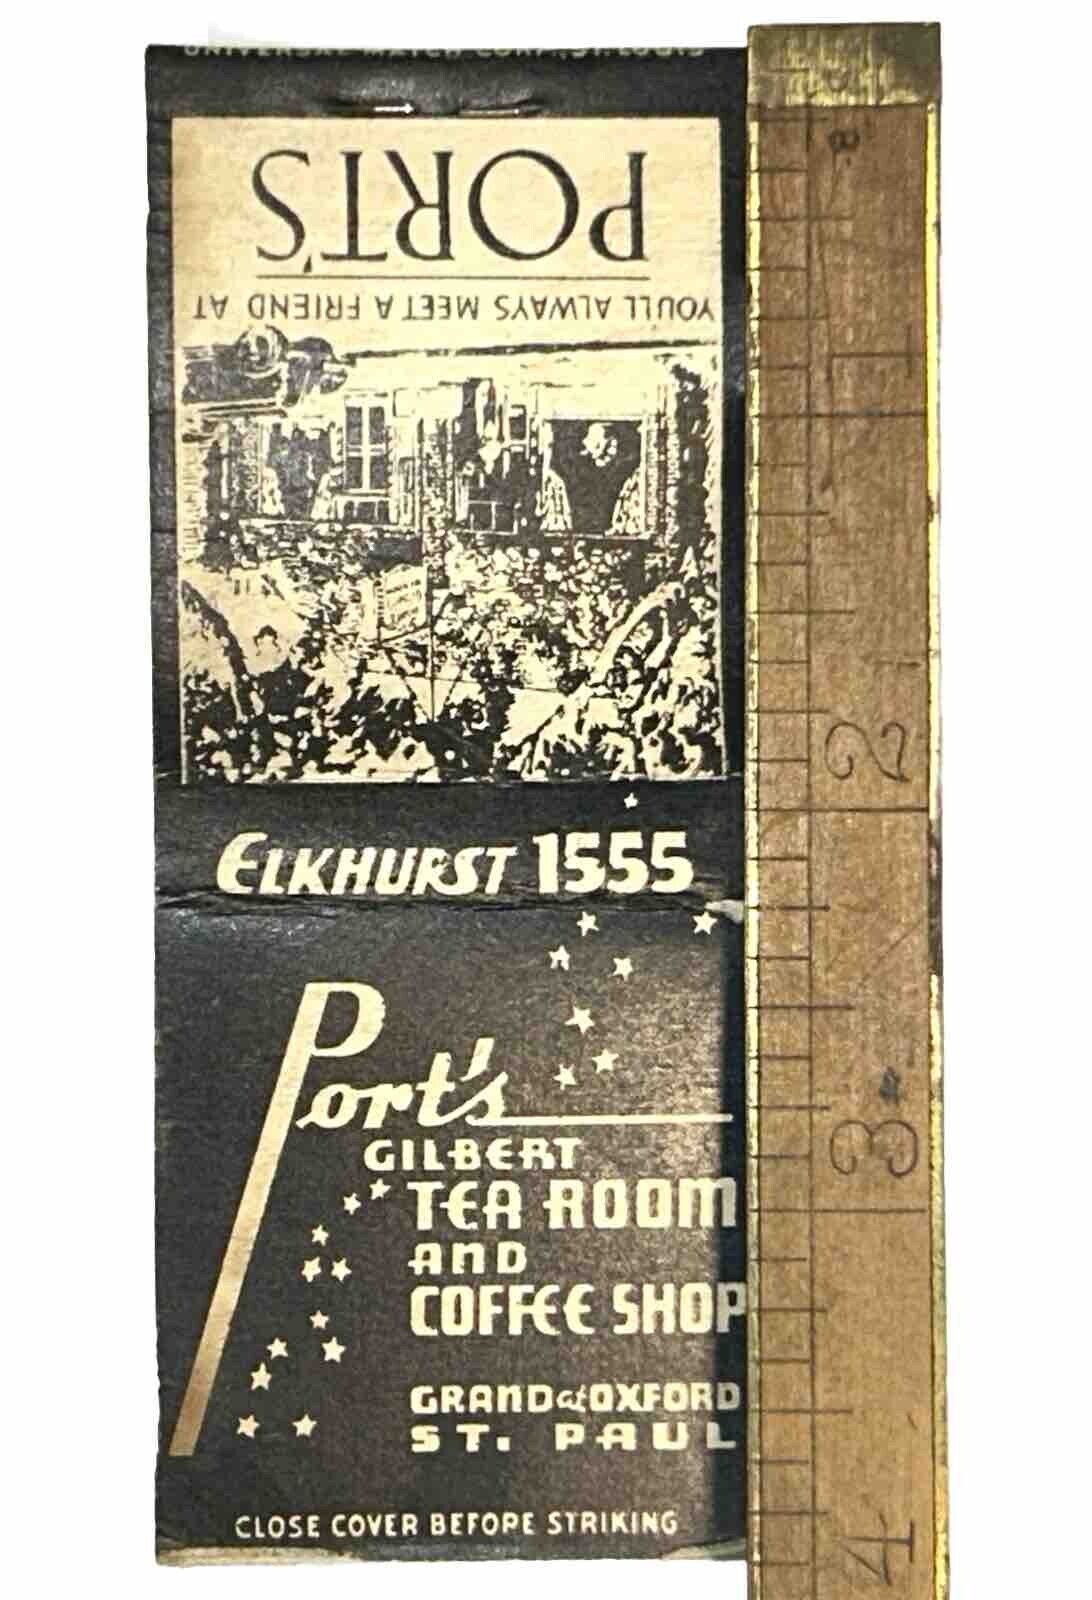 Antique St Paul Minn Advertising Matchbook Port\'s Gilbert Tea Room Coffee 1930s